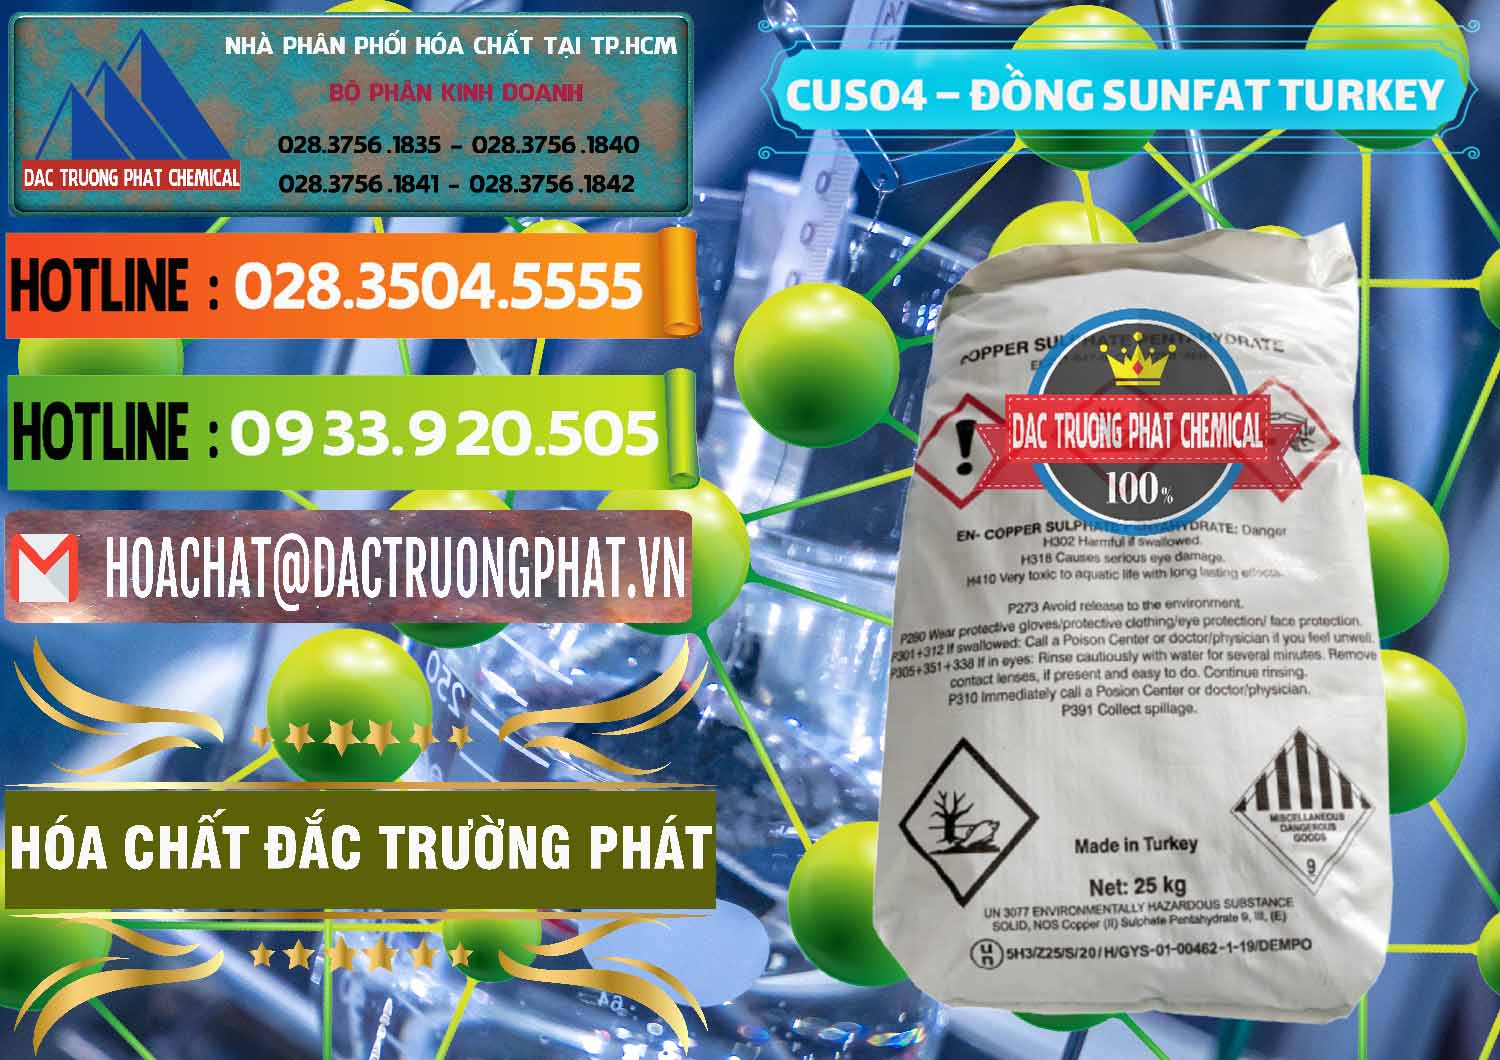 Nơi chuyên cung cấp _ bán CuSO4 – Đồng Sunfat Thổ Nhĩ Kỳ Turkey - 0481 - Đơn vị cung ứng & phân phối hóa chất tại TP.HCM - cungcaphoachat.com.vn